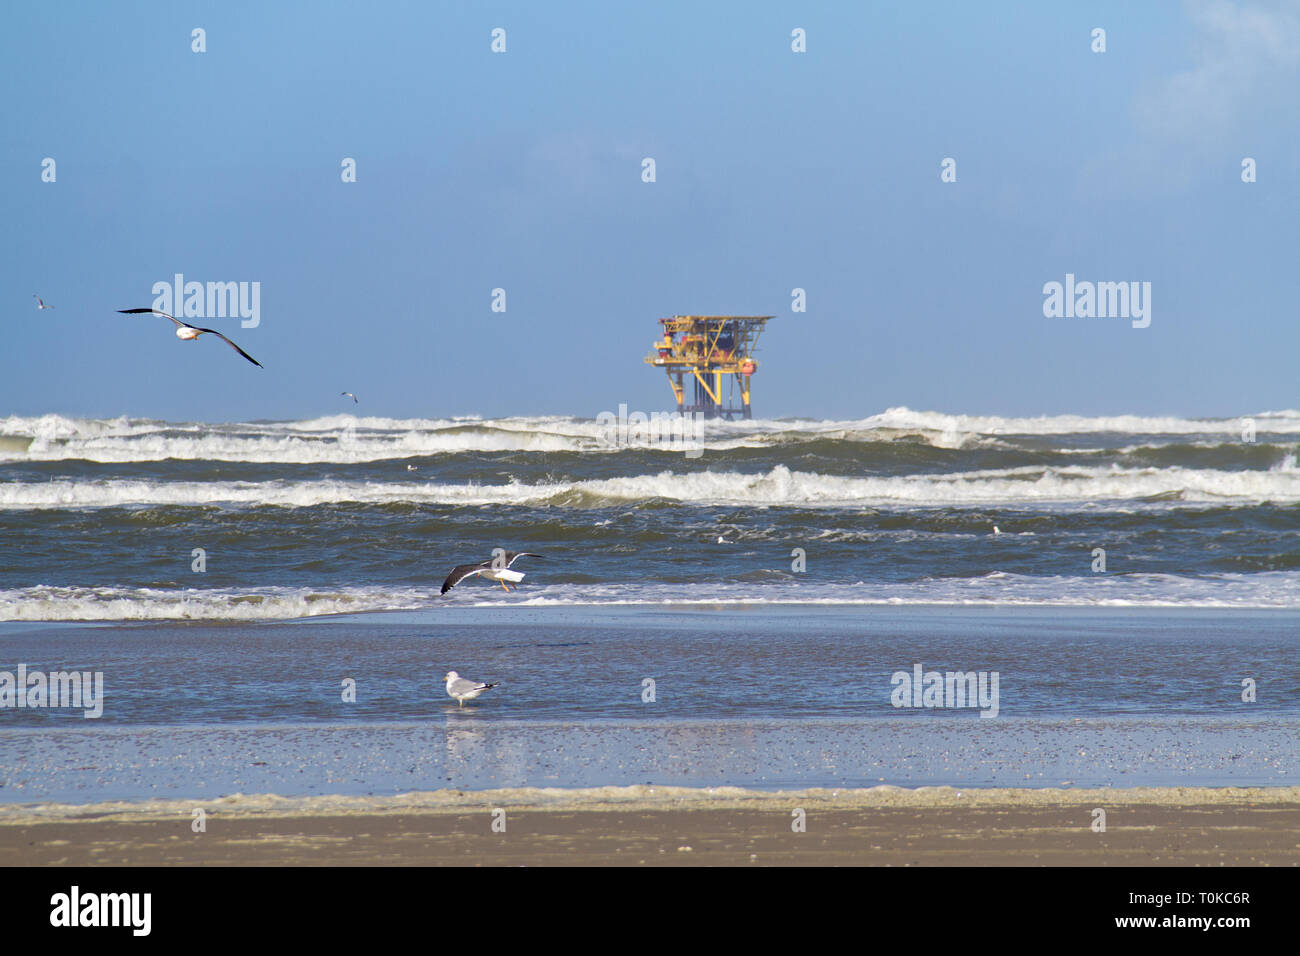 Plataforma de producción offshore, cerca de la isla holandesa de Ameland, playa, olas y gaviotas en primer plano Foto de stock